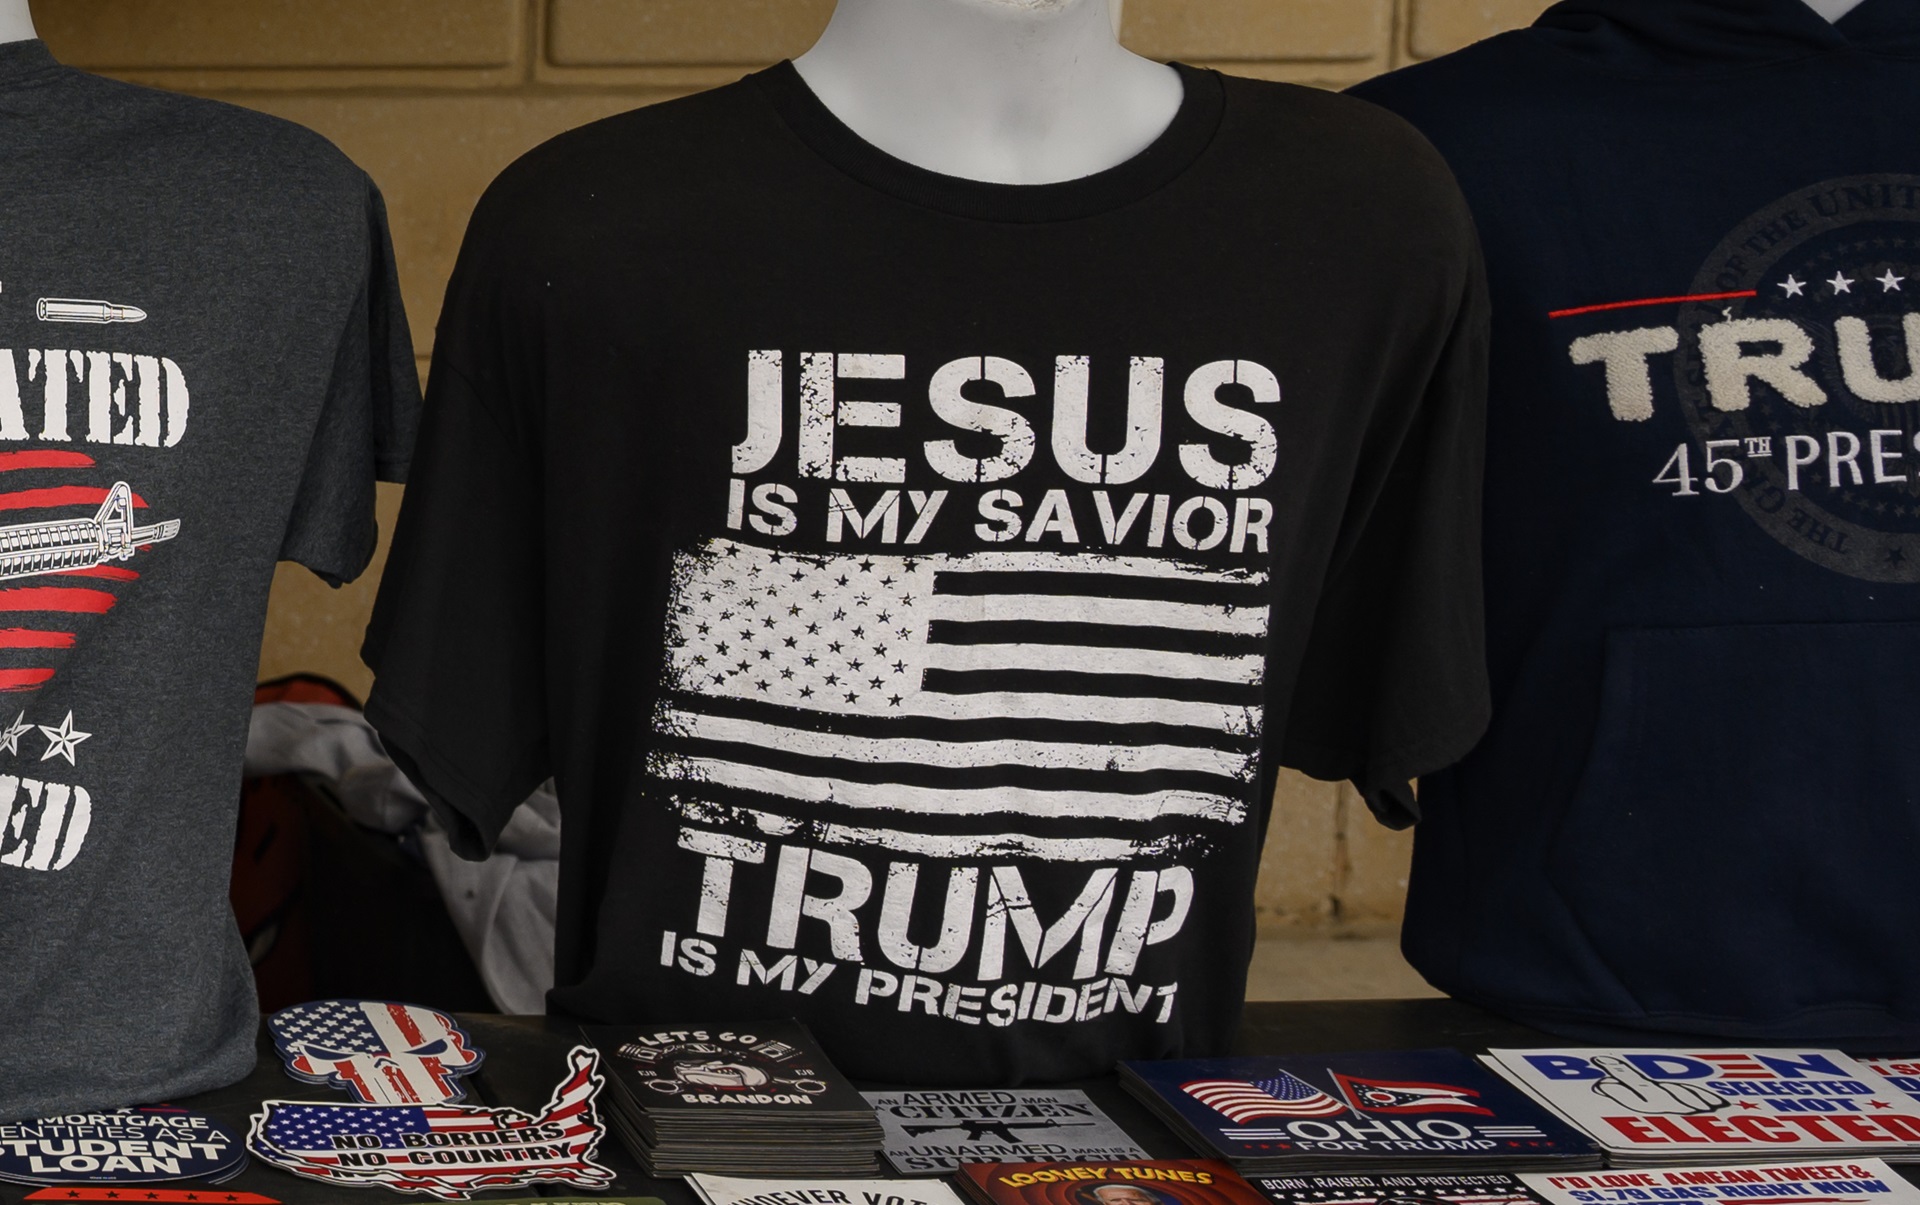 91 accuse penali non fermeranno gli evangelici dal votare per Trump